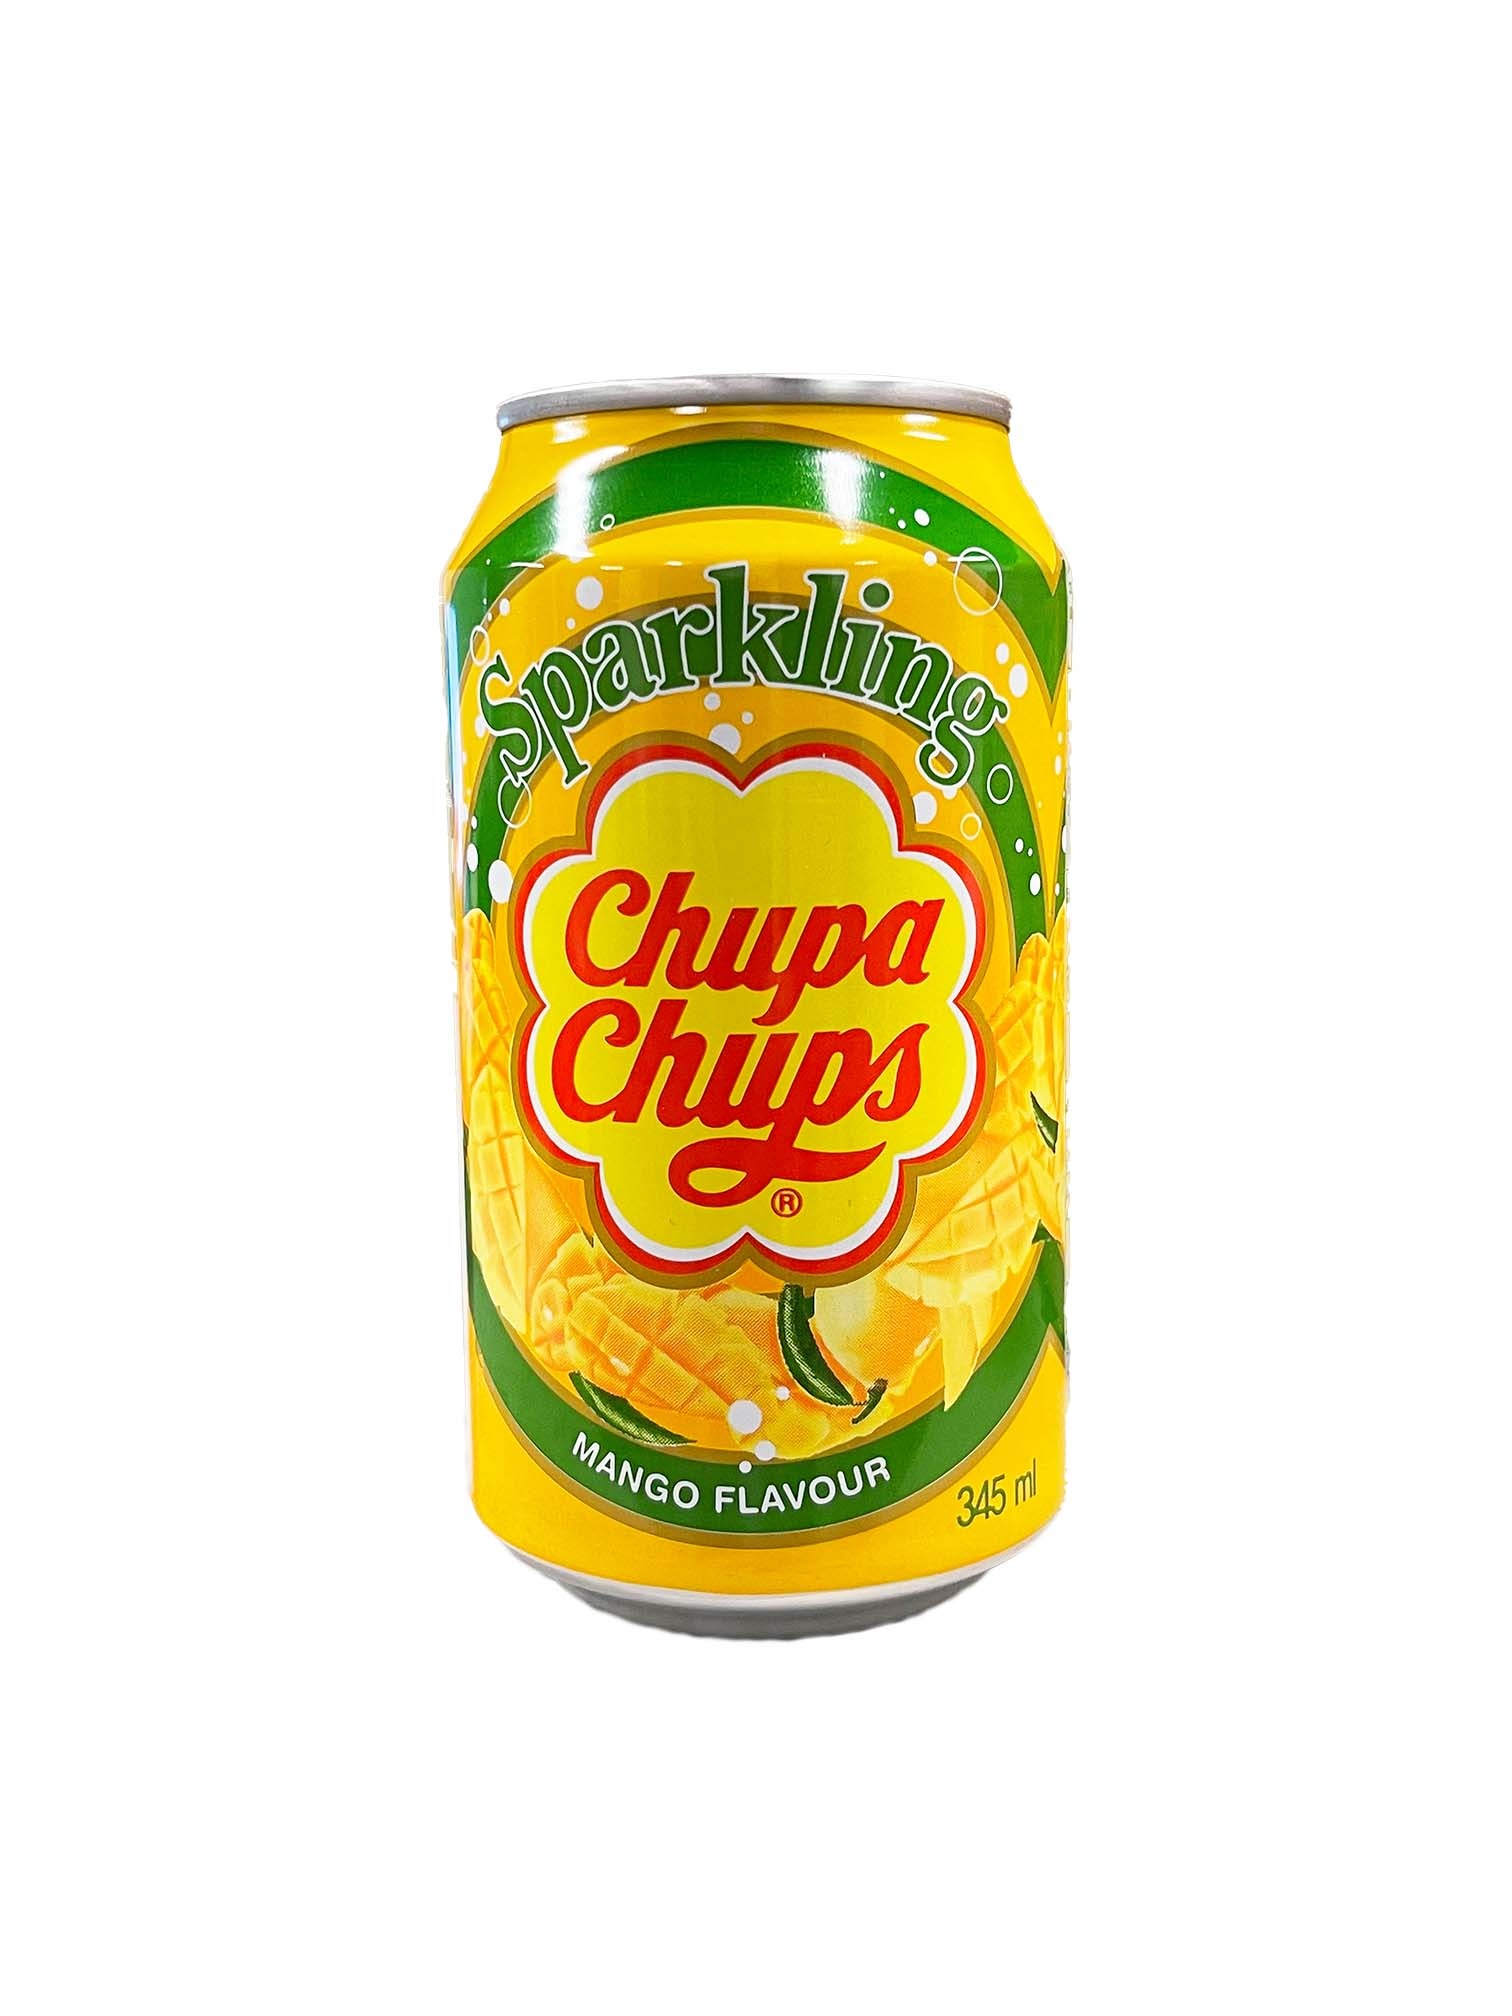 Chupa Chups Sparkling Soda Gift Set 4 Cans Asian Snack Box Asian